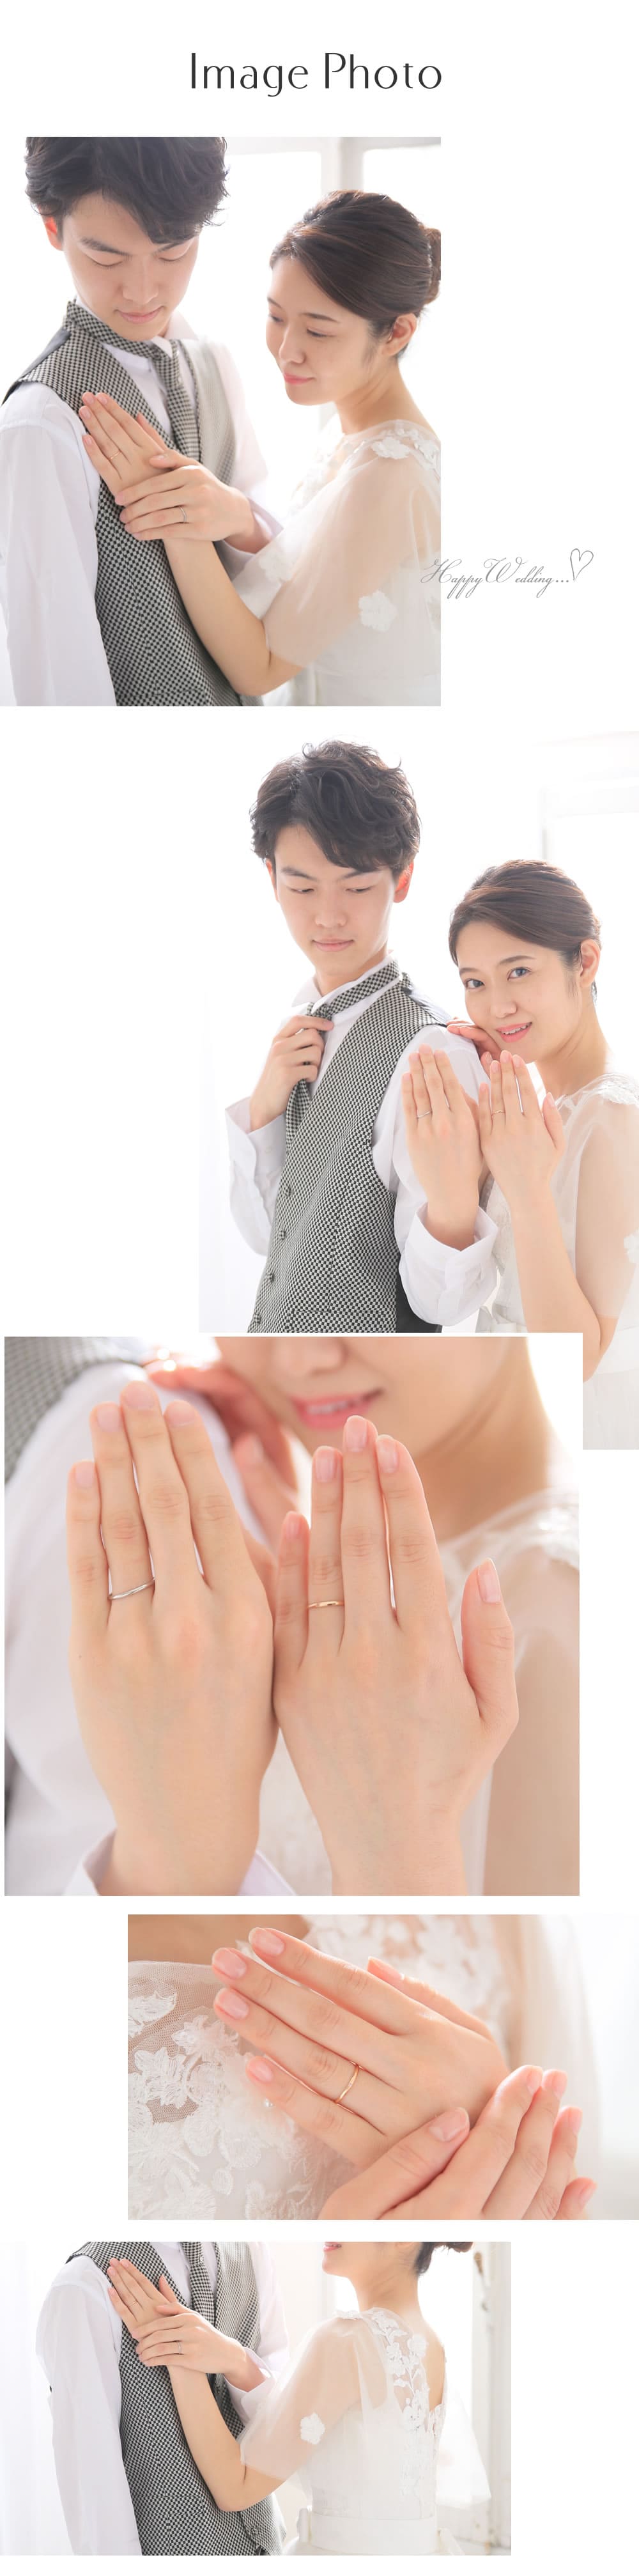 プラチナとK18ピンクゴールドの結婚指輪モデル着用イメージ